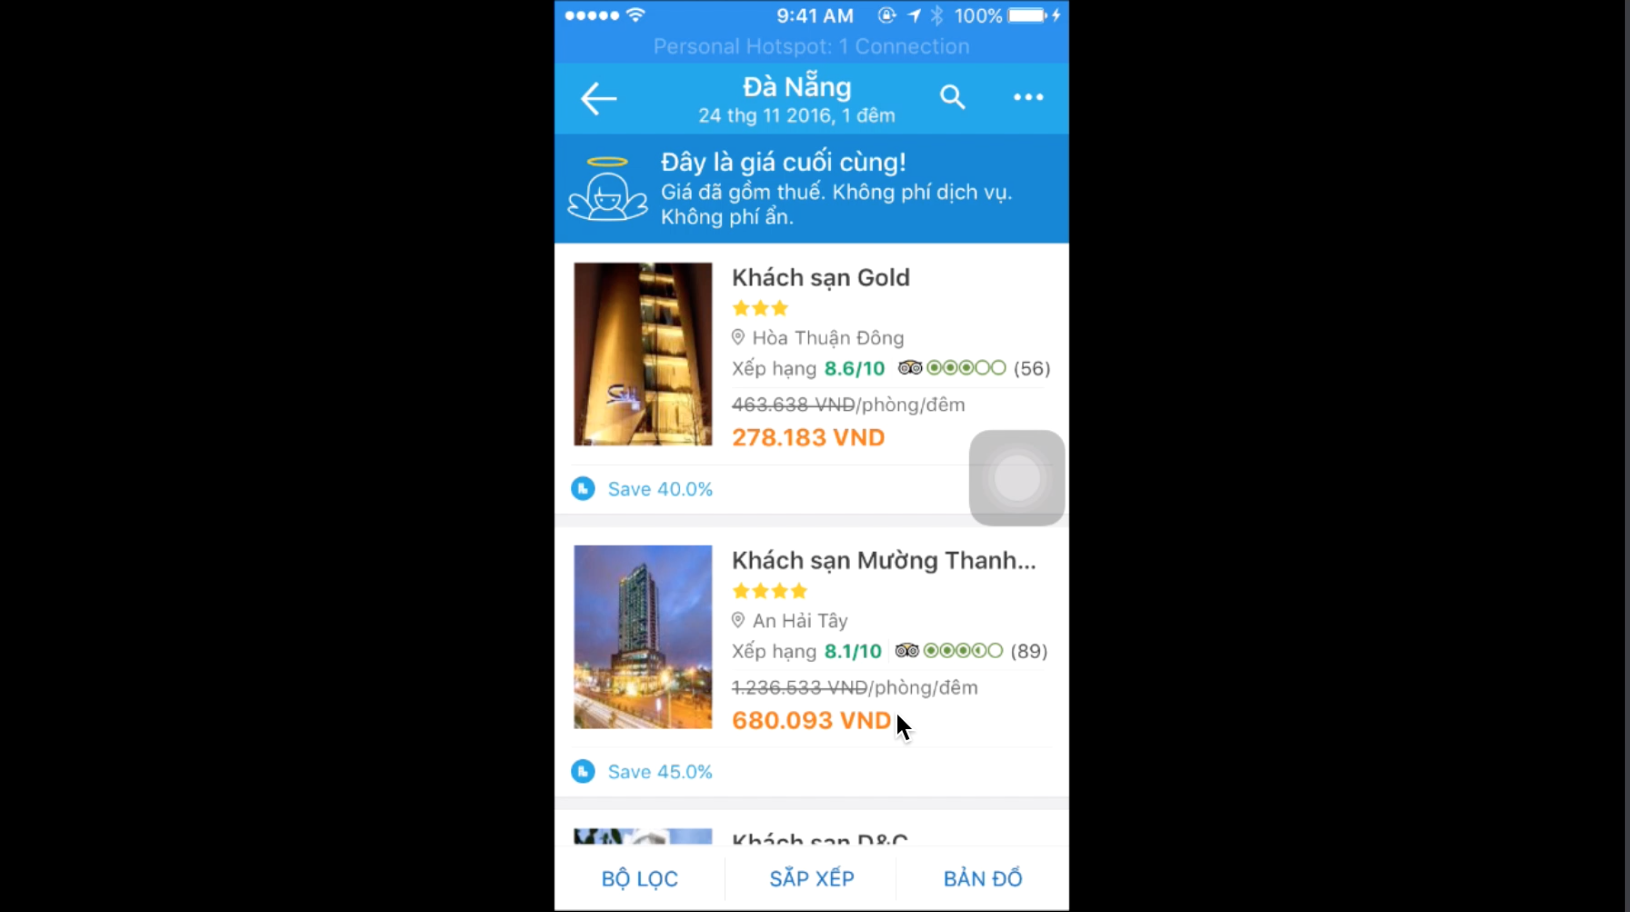 Giá khách sạn mường thành trên app traveloka chỉ 680k rẻ hơn trên web gần 300k, mình chọn cùng ngày cùng địa điểm ở Đà Nẵng nhé